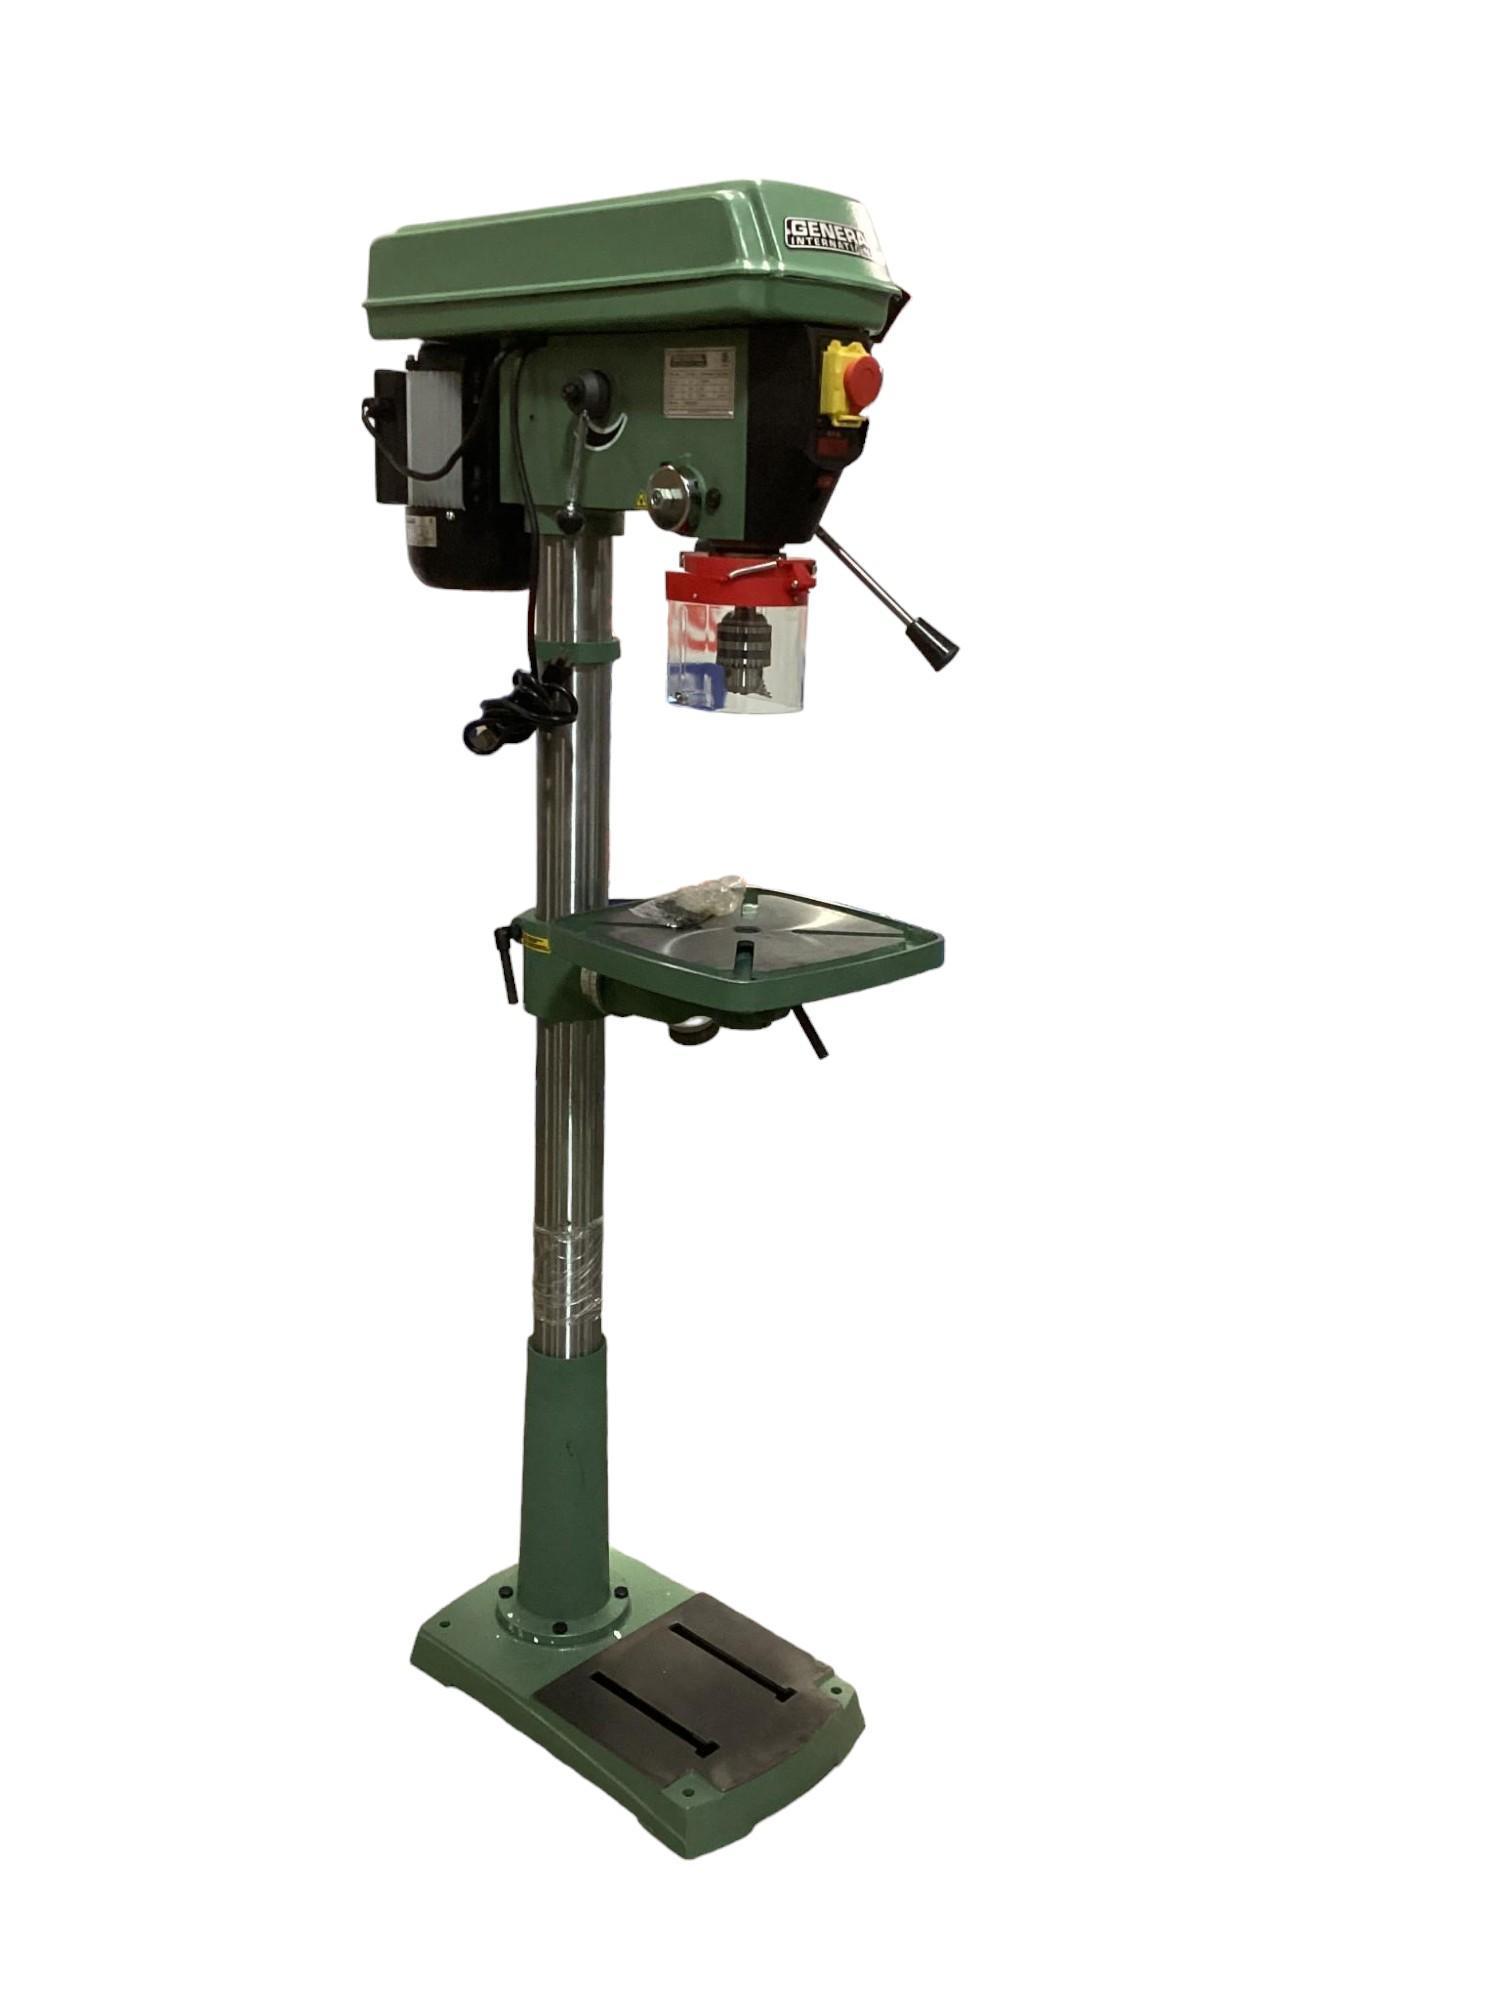 New Unused General Model: 75-165 M1 17" Drill Press